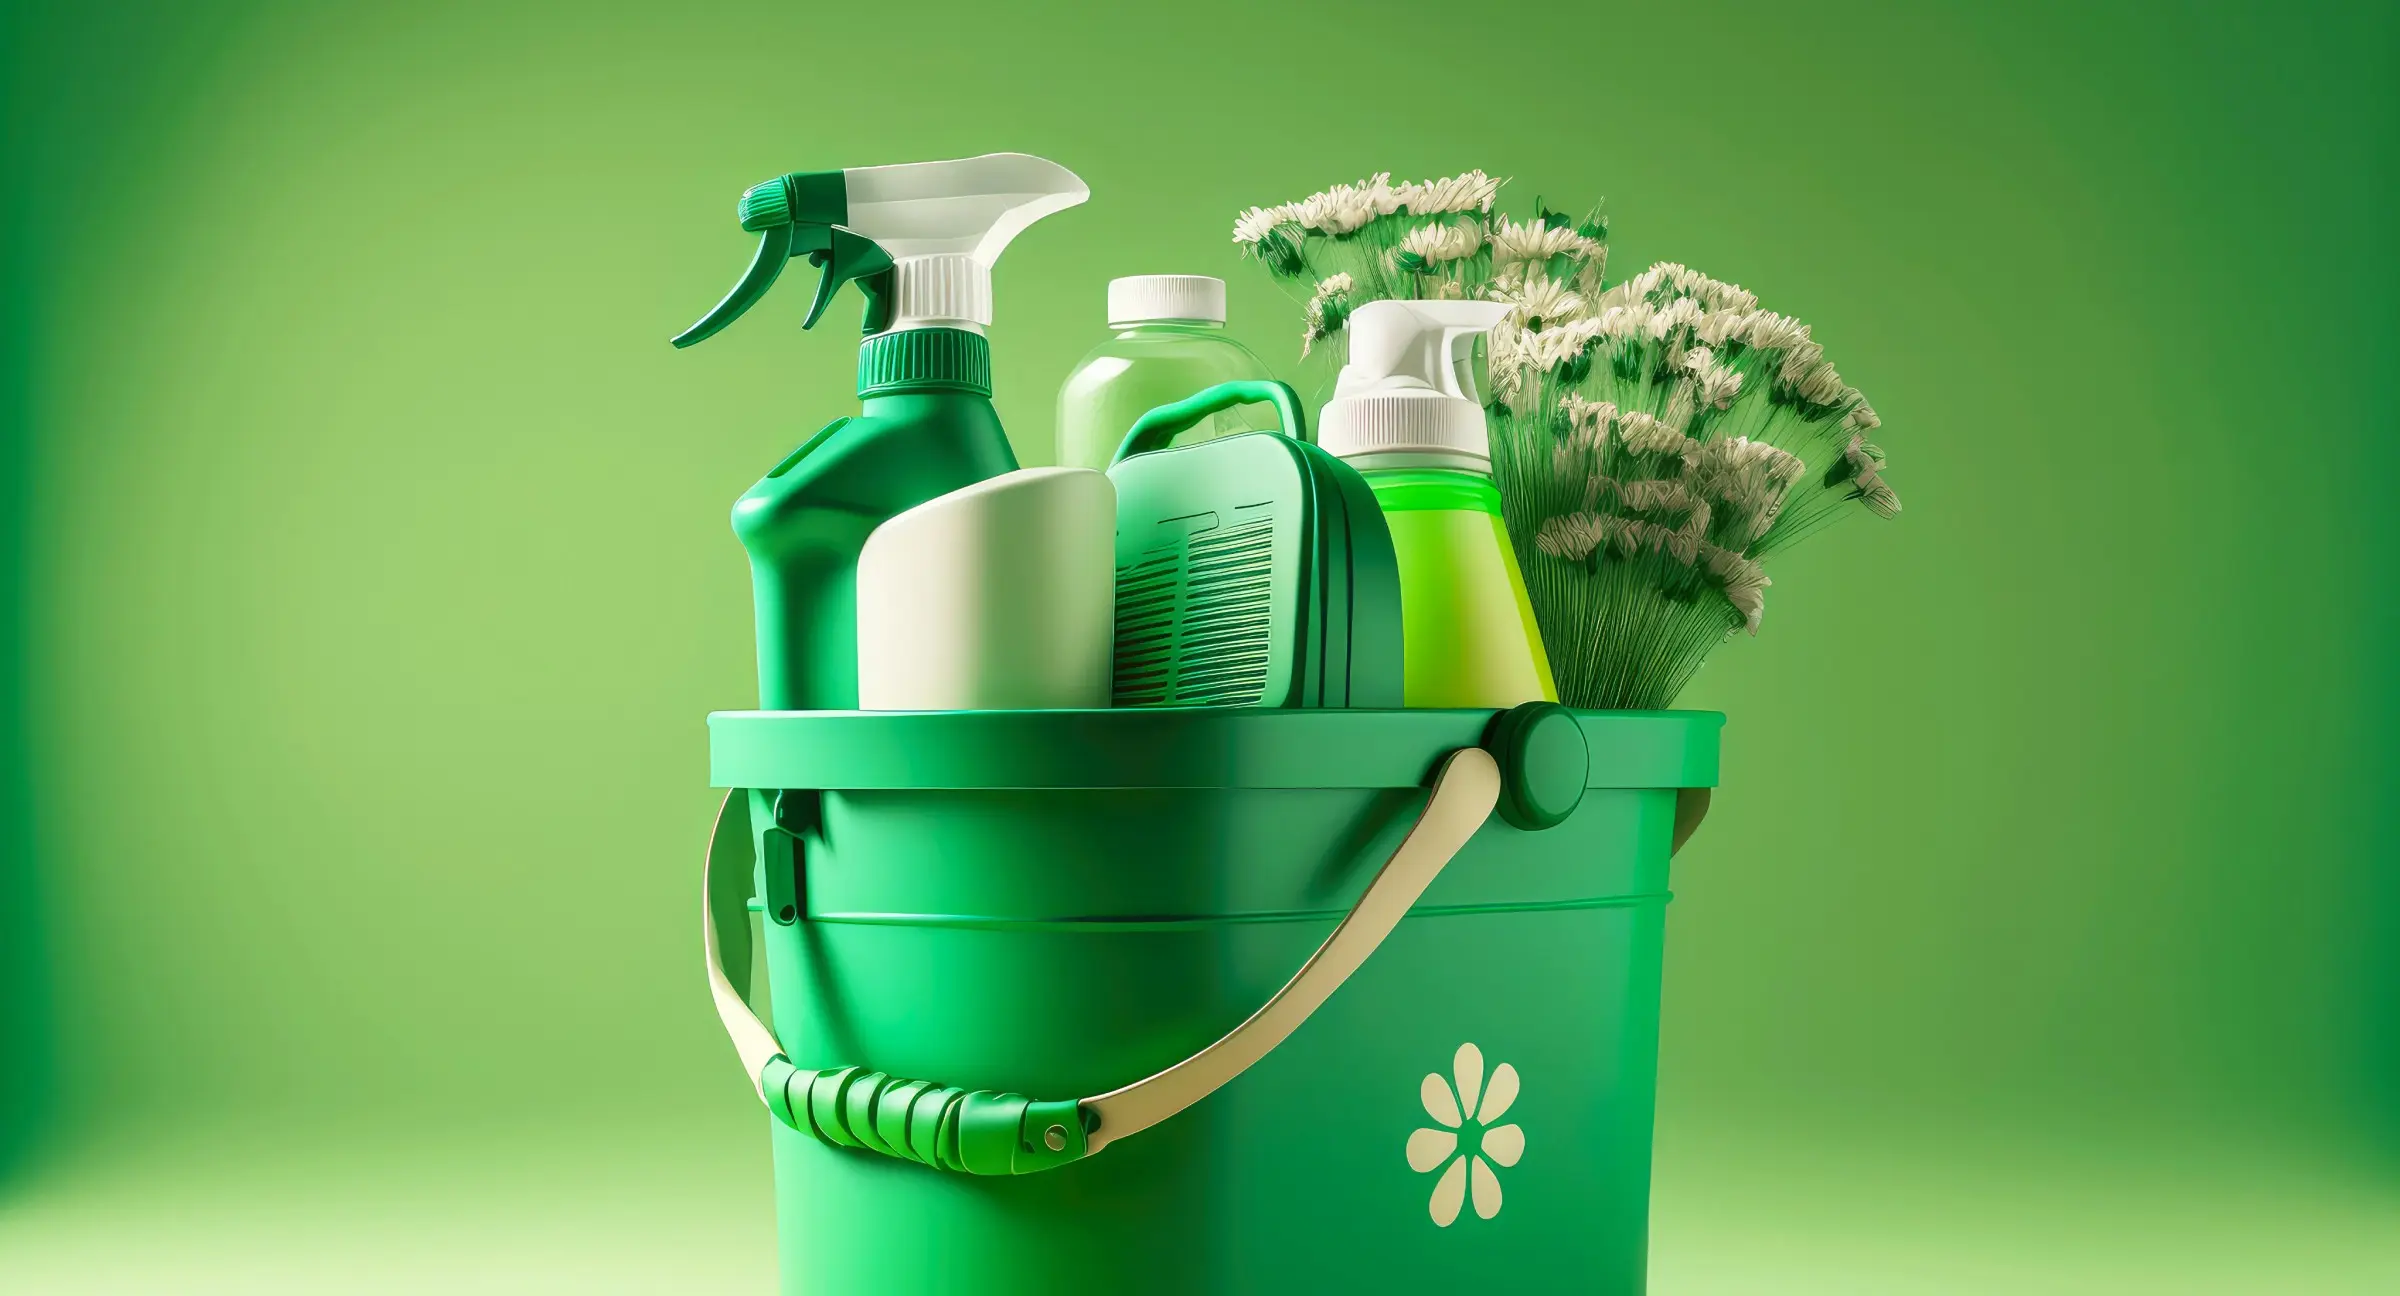 Уборка без химии: экологичные средства для уборки, которые можно сделать своими руками